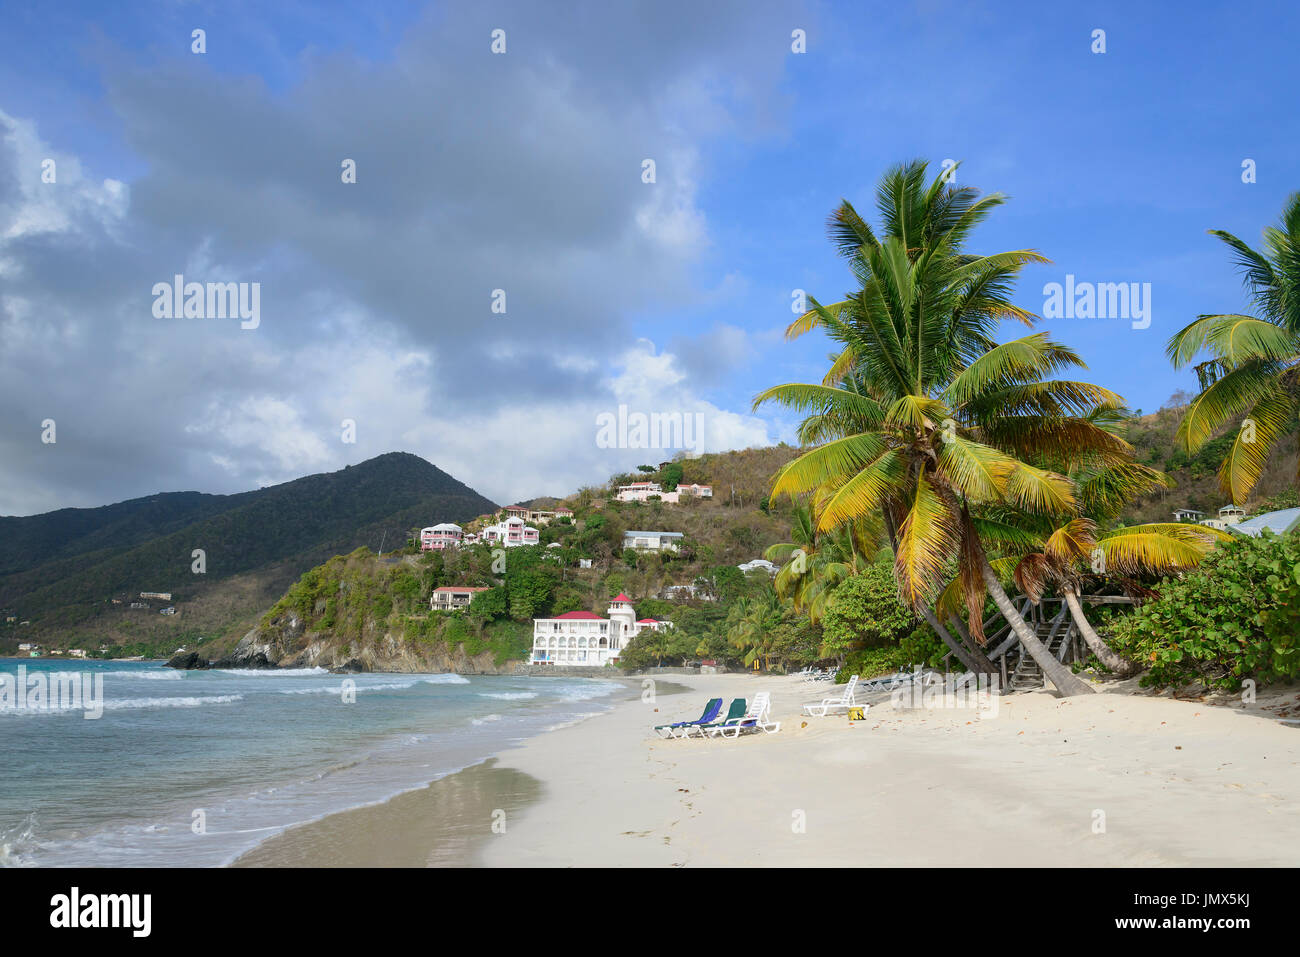 Spiaggia di sabbia e il Palm Tree, isola di Tortola, Isole Vergini Britanniche, Mar dei Caraibi Foto Stock